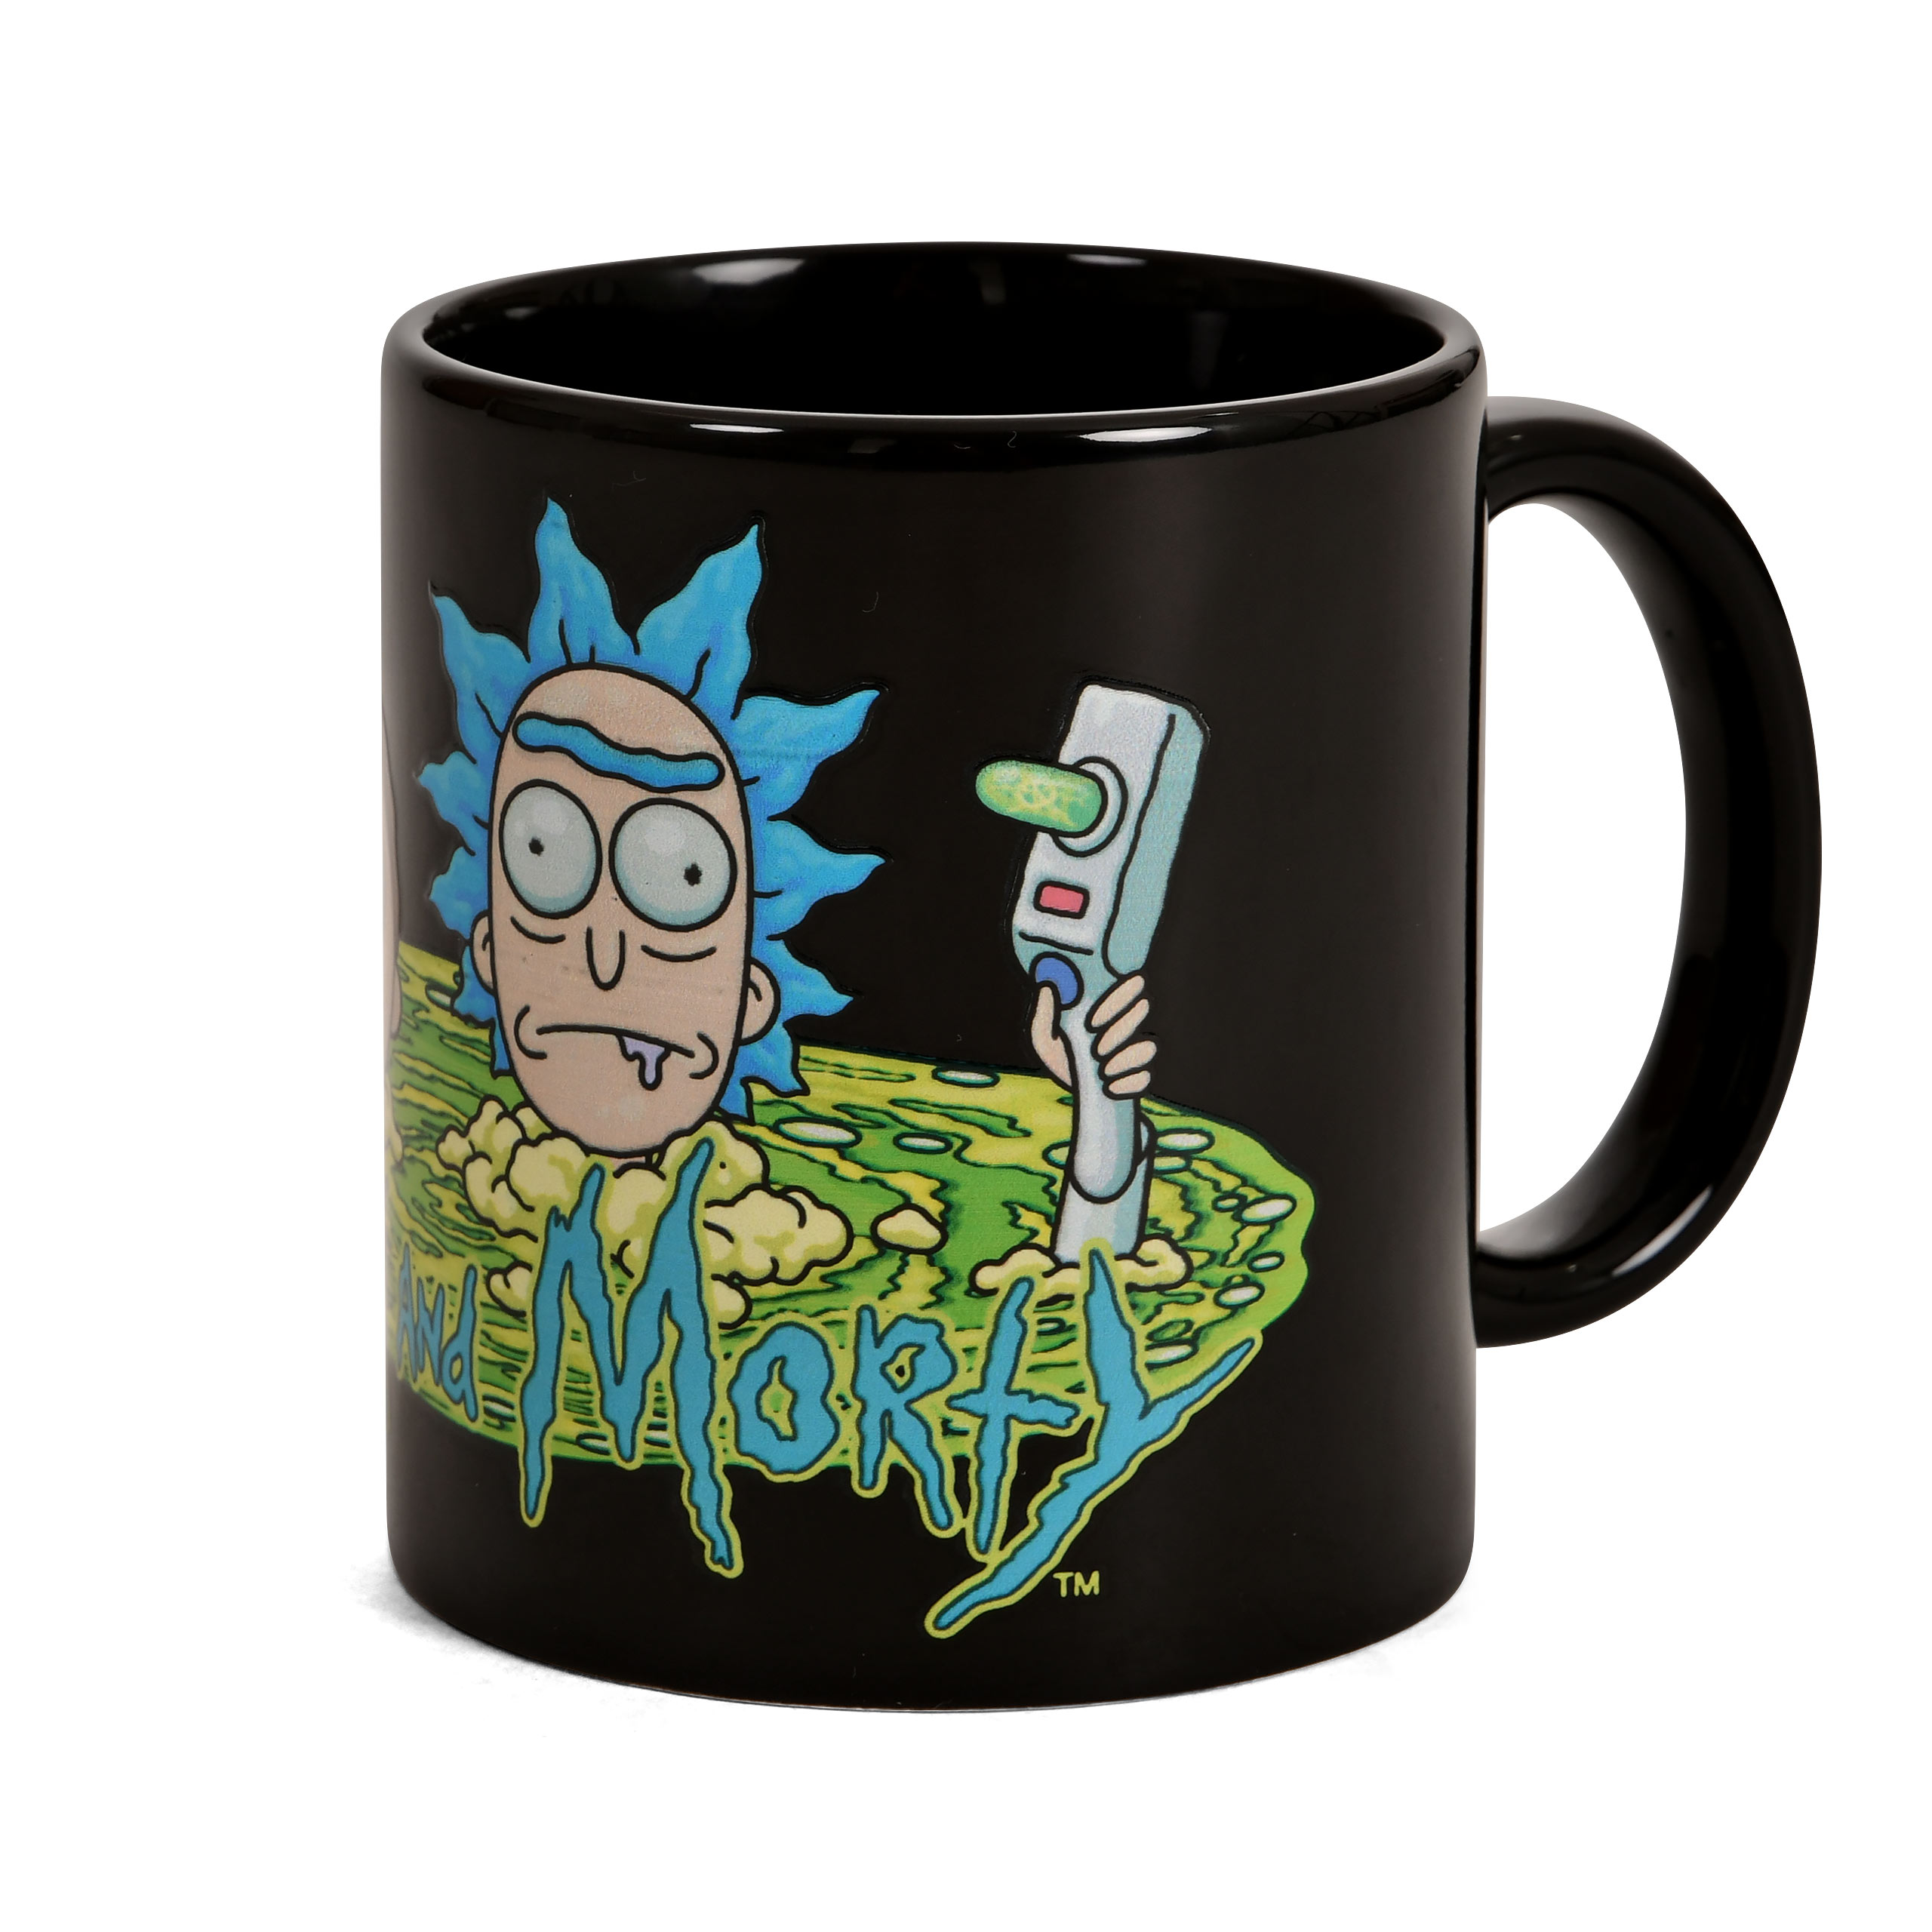 Rick and Morty - Portal Mug